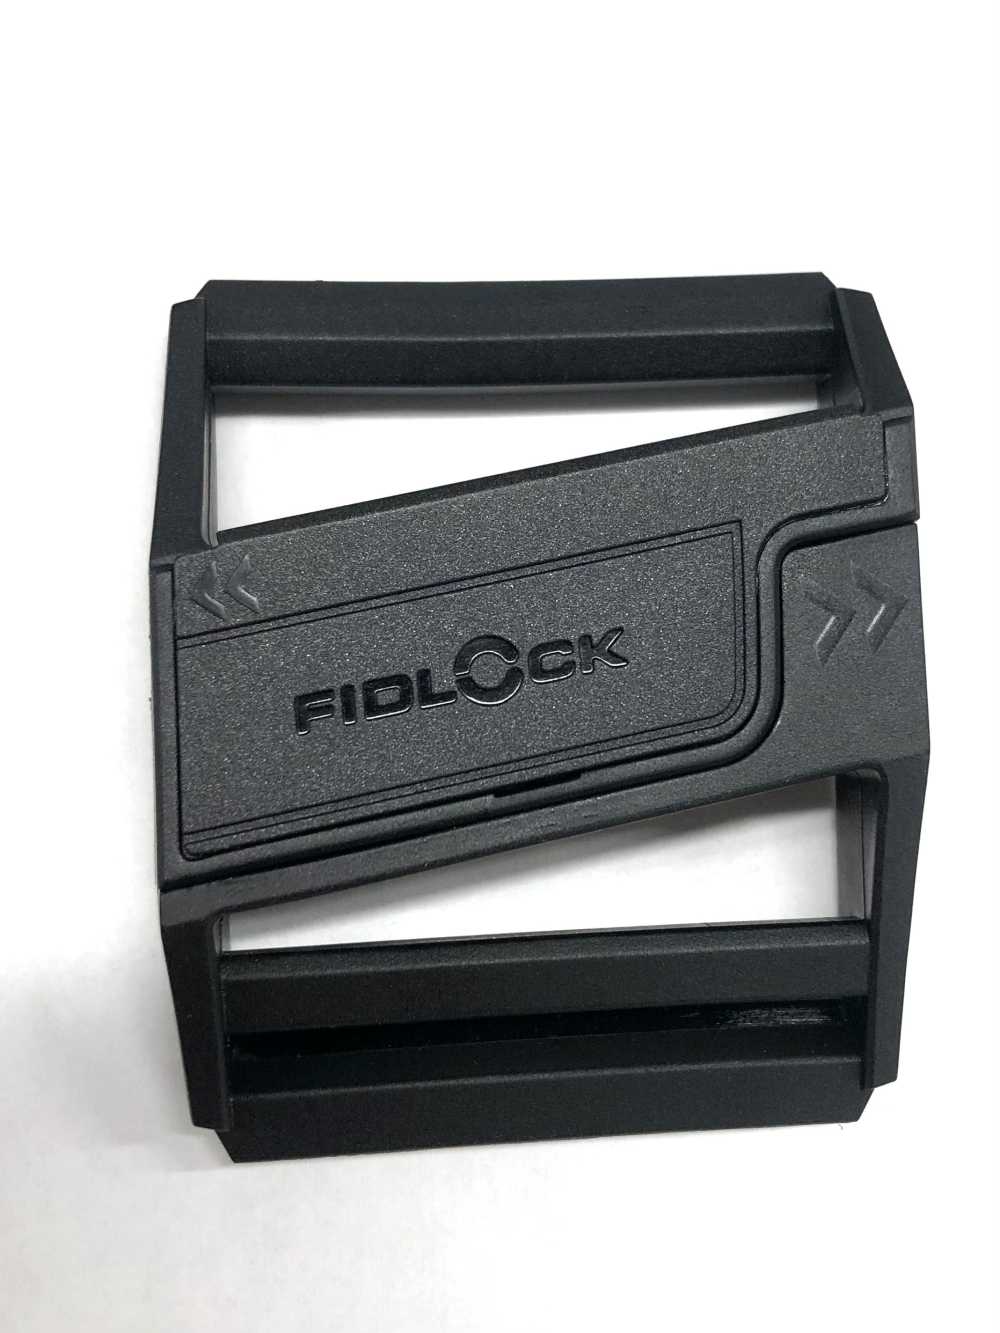 IFF4100 인쇄 가능 40MM 슬라이드 버클[버클 고리, 링] FIDLOCK